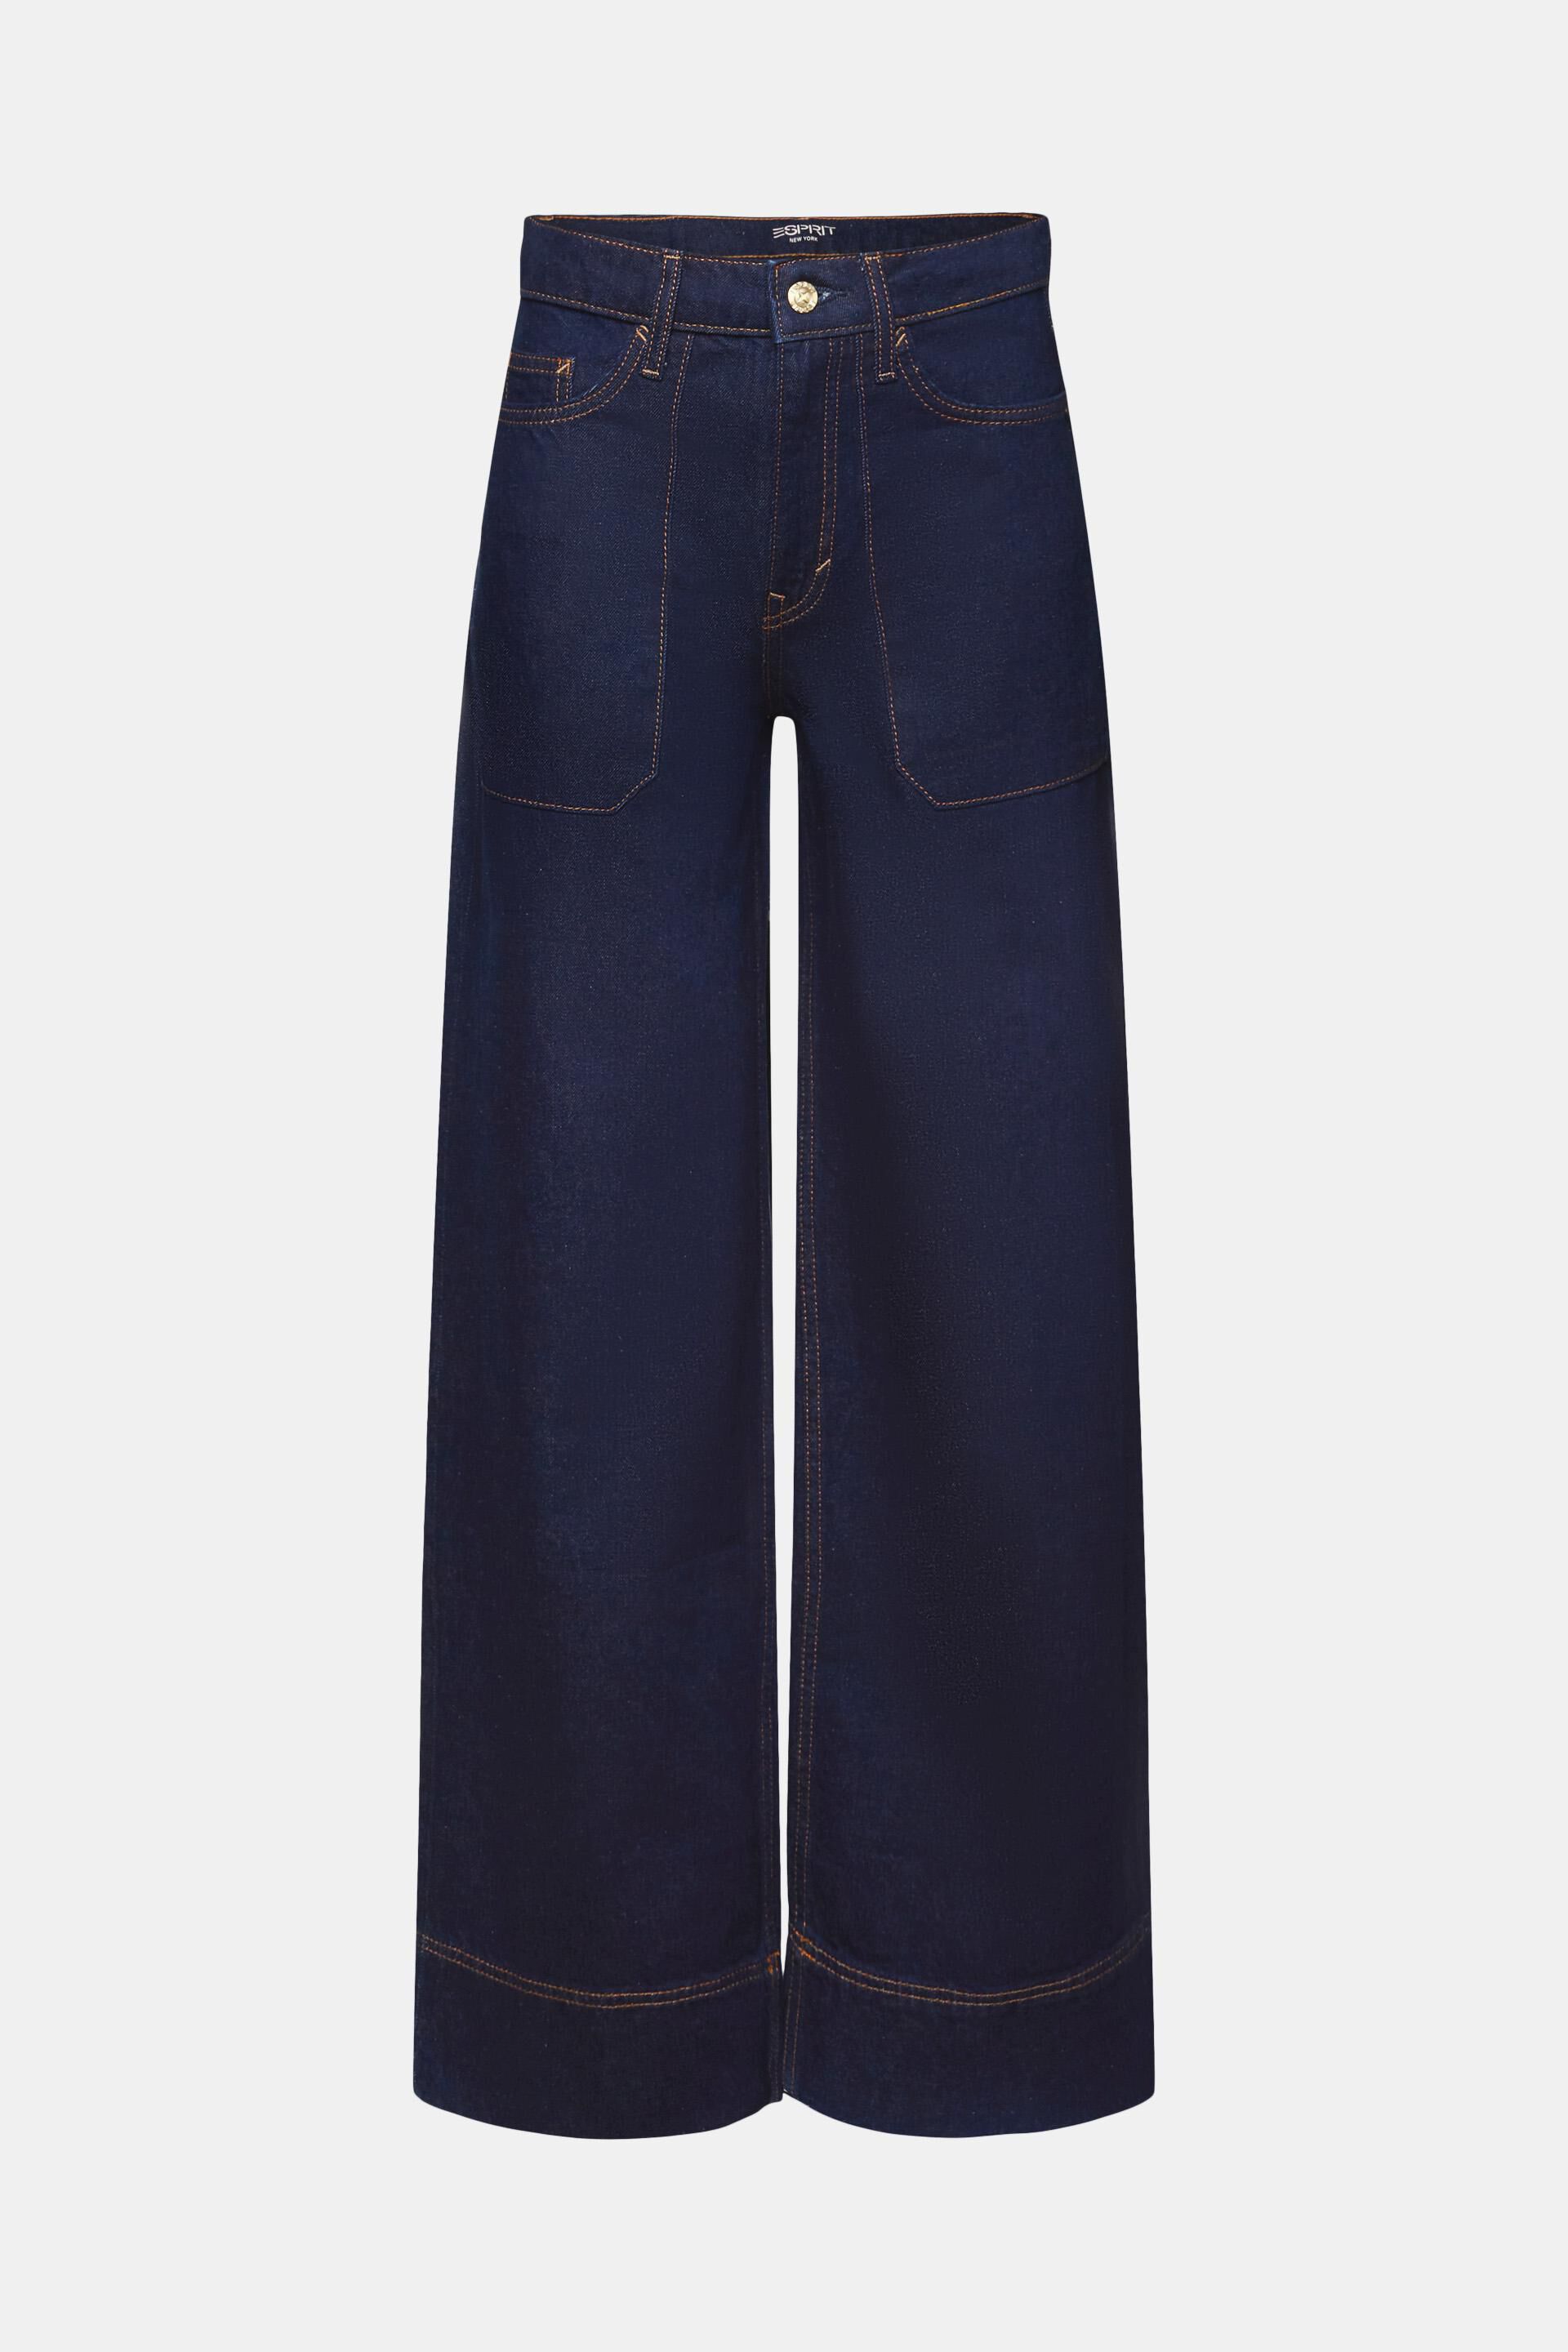 Esprit Damen Retro-Jeans mit weitem 100 Bein, Baumwolle 